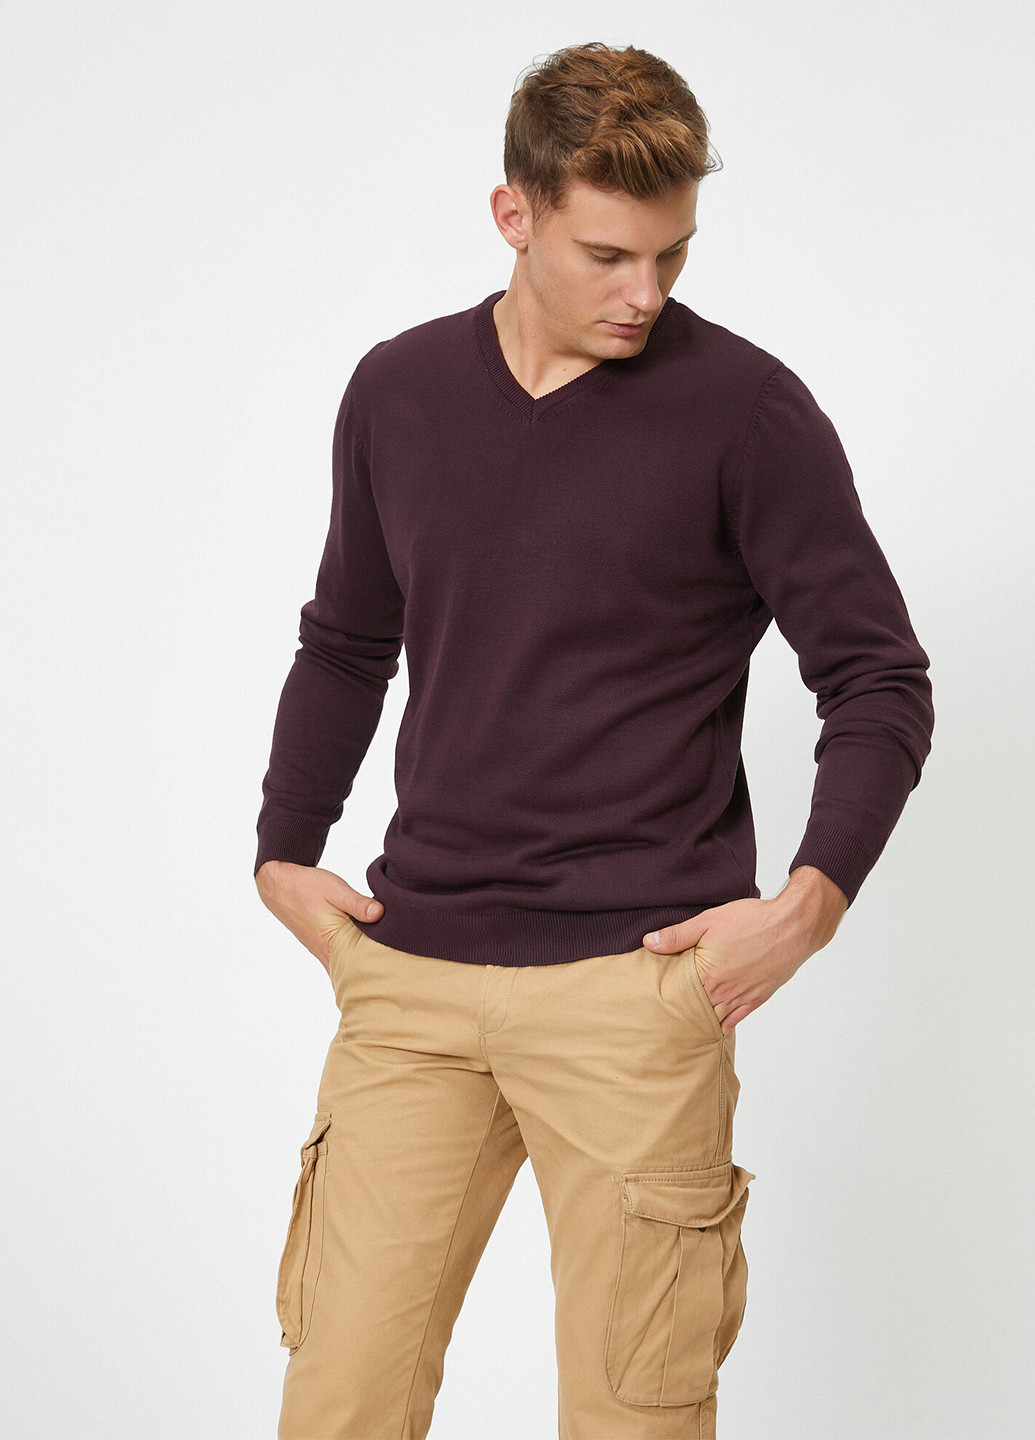 Сливовый демисезонный пуловер пуловер KOTON